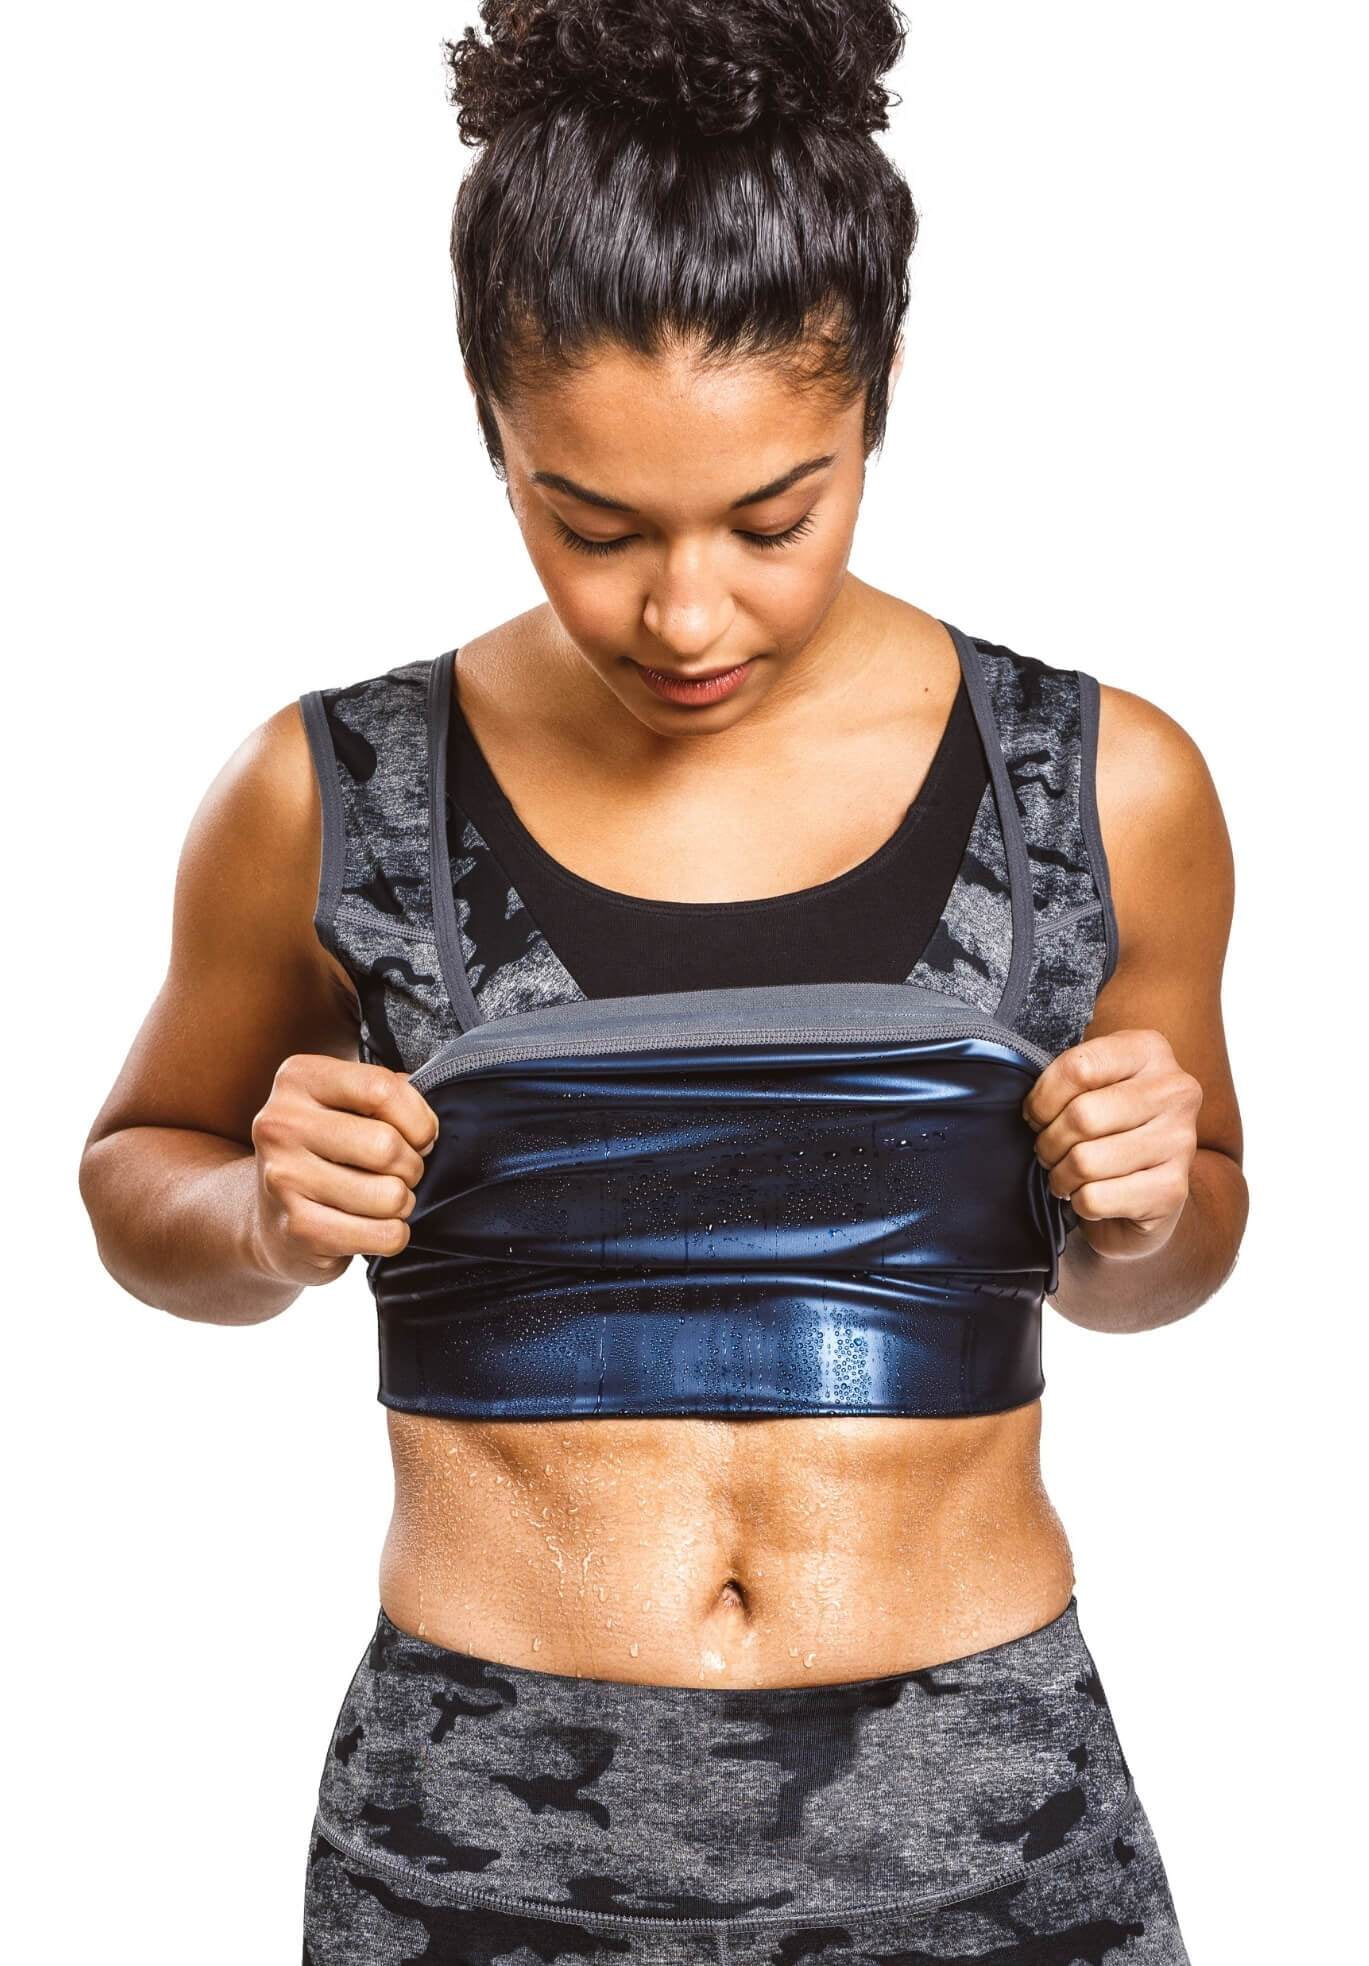 Women Men Sweat Shaper Polymer Sauna Vest Tank Top Shapewear Weightloss Sports 